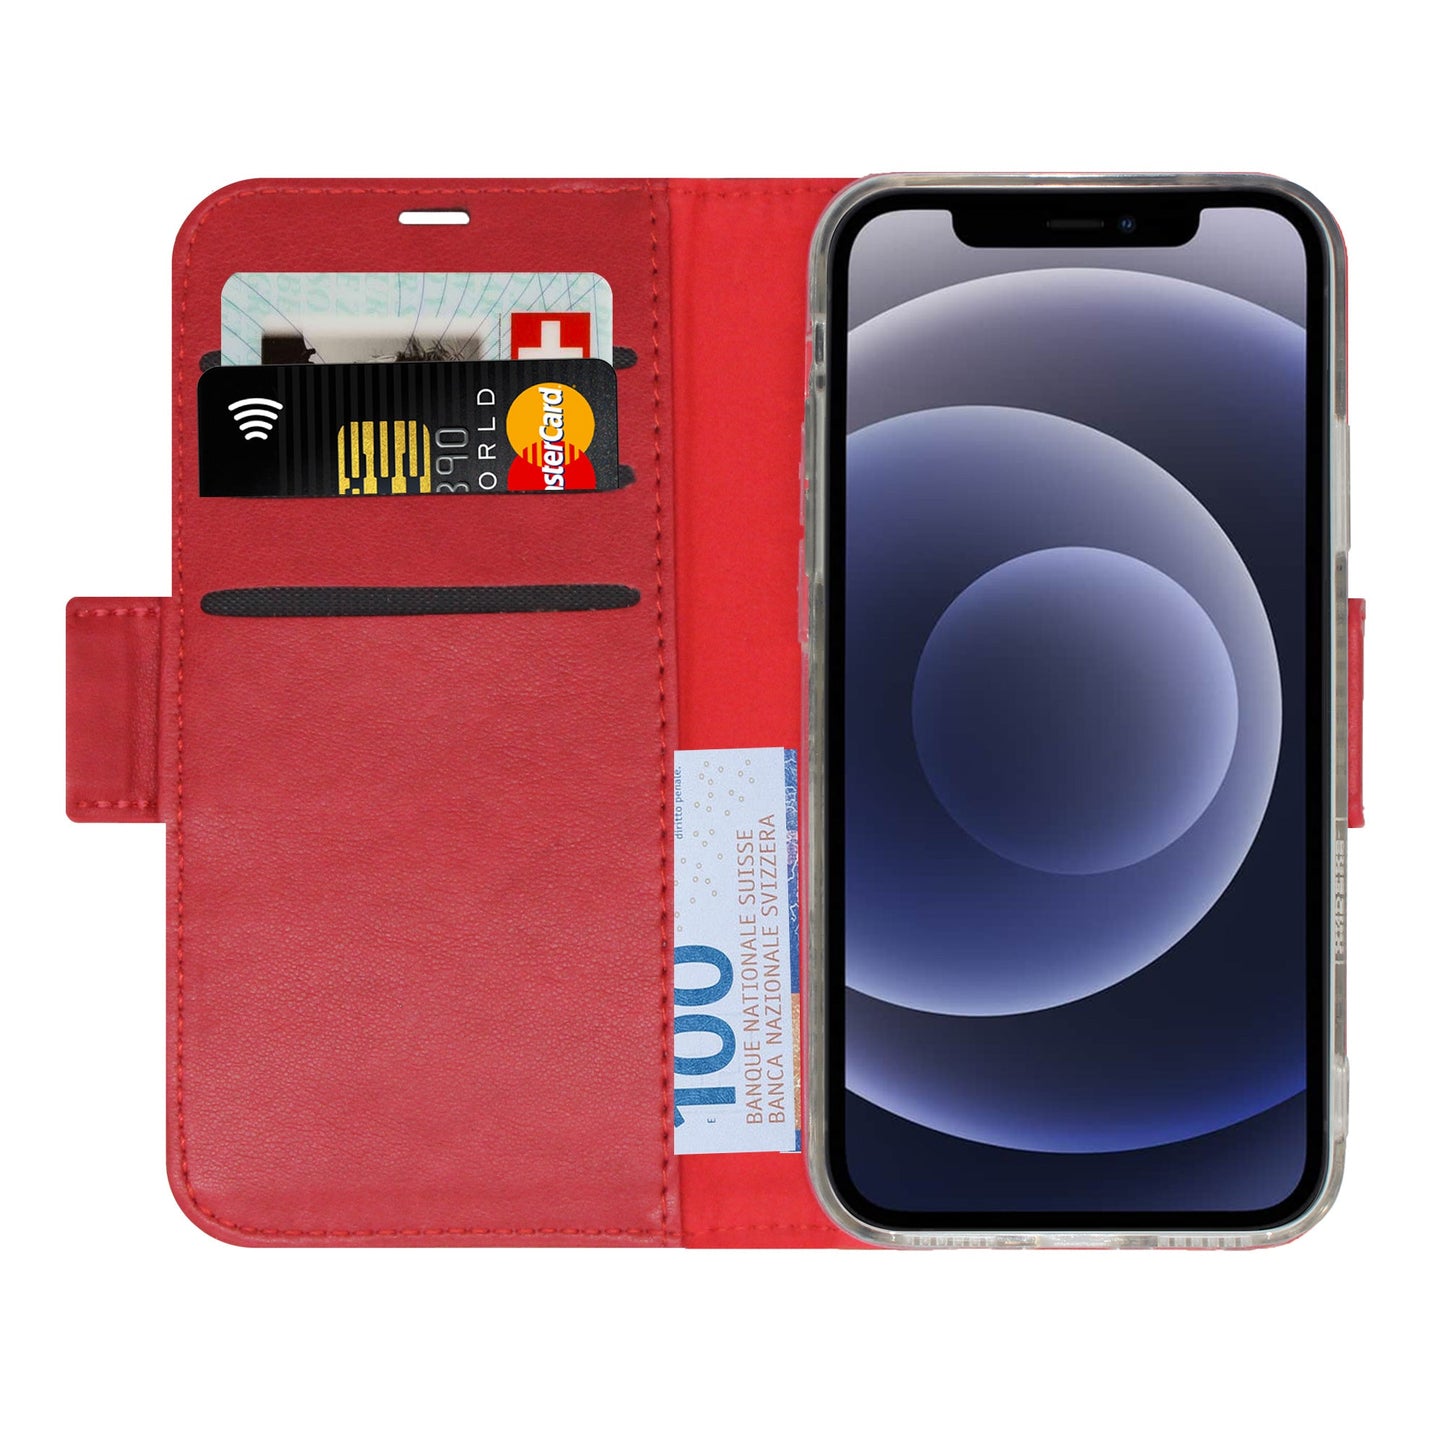 Uni Rot Victor Case für iPhone X/XS